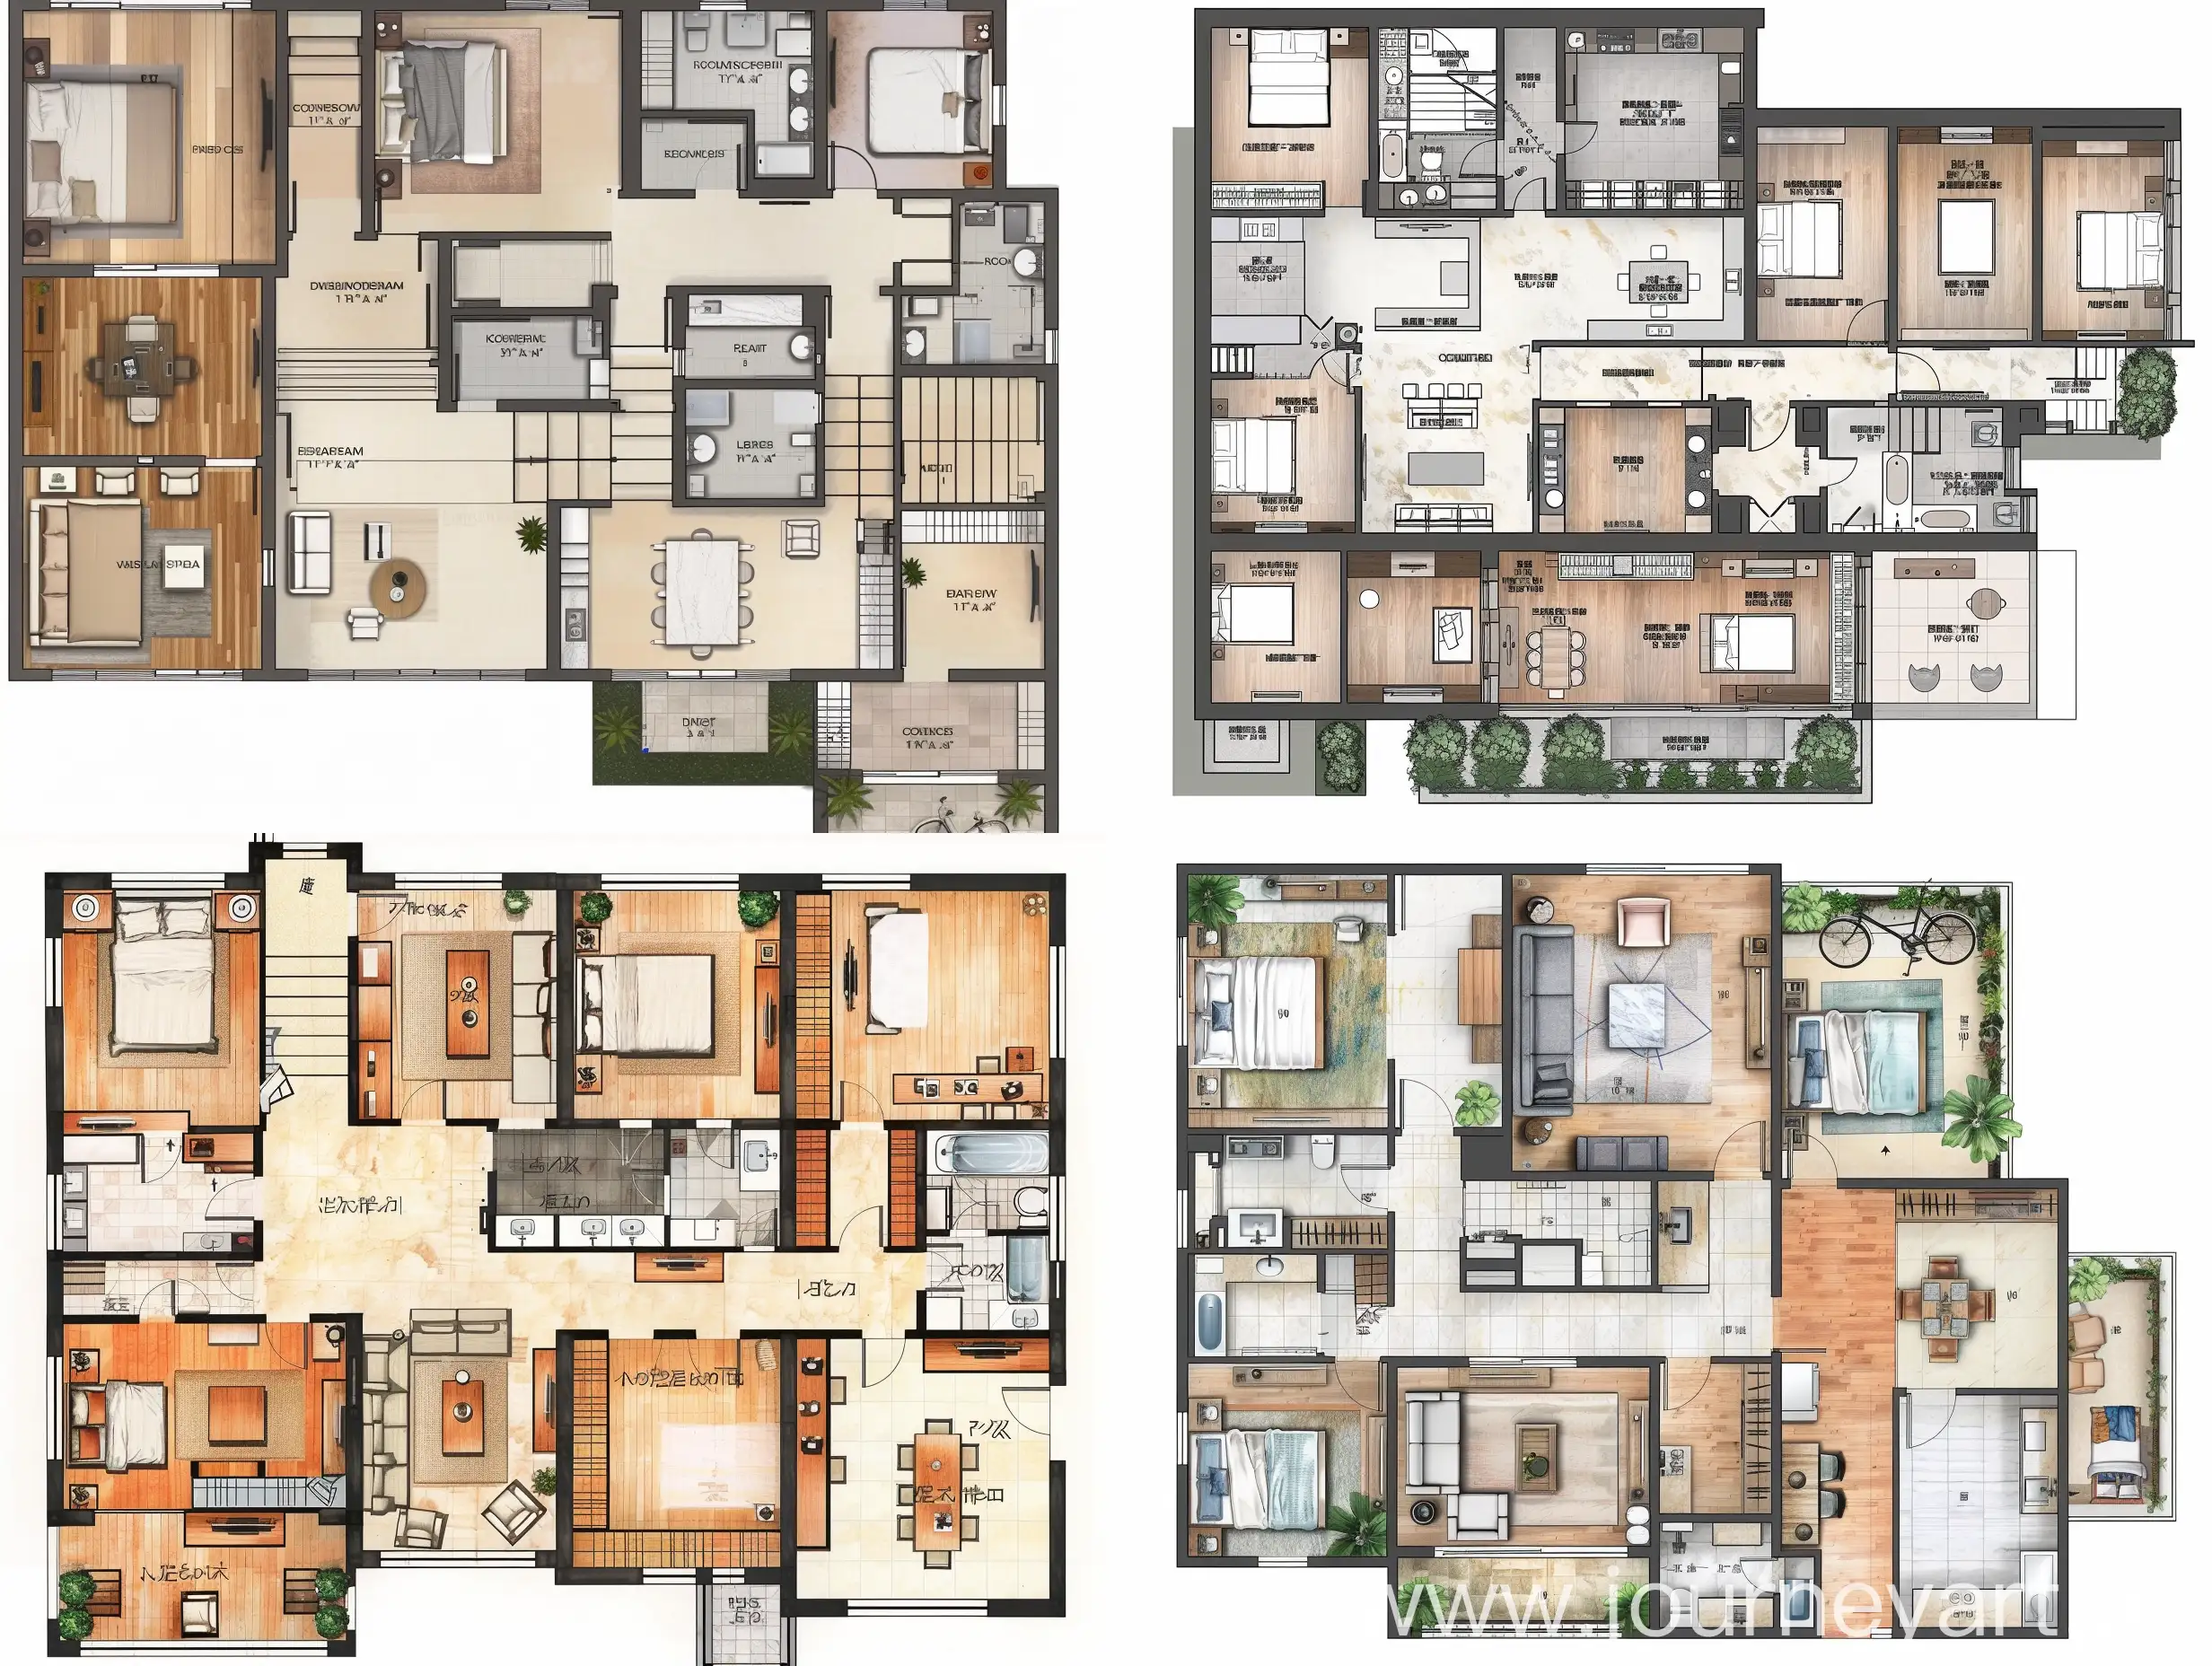 Rural-MultiFloor-SelfBuilt-House-Floor-Plan-Drawings